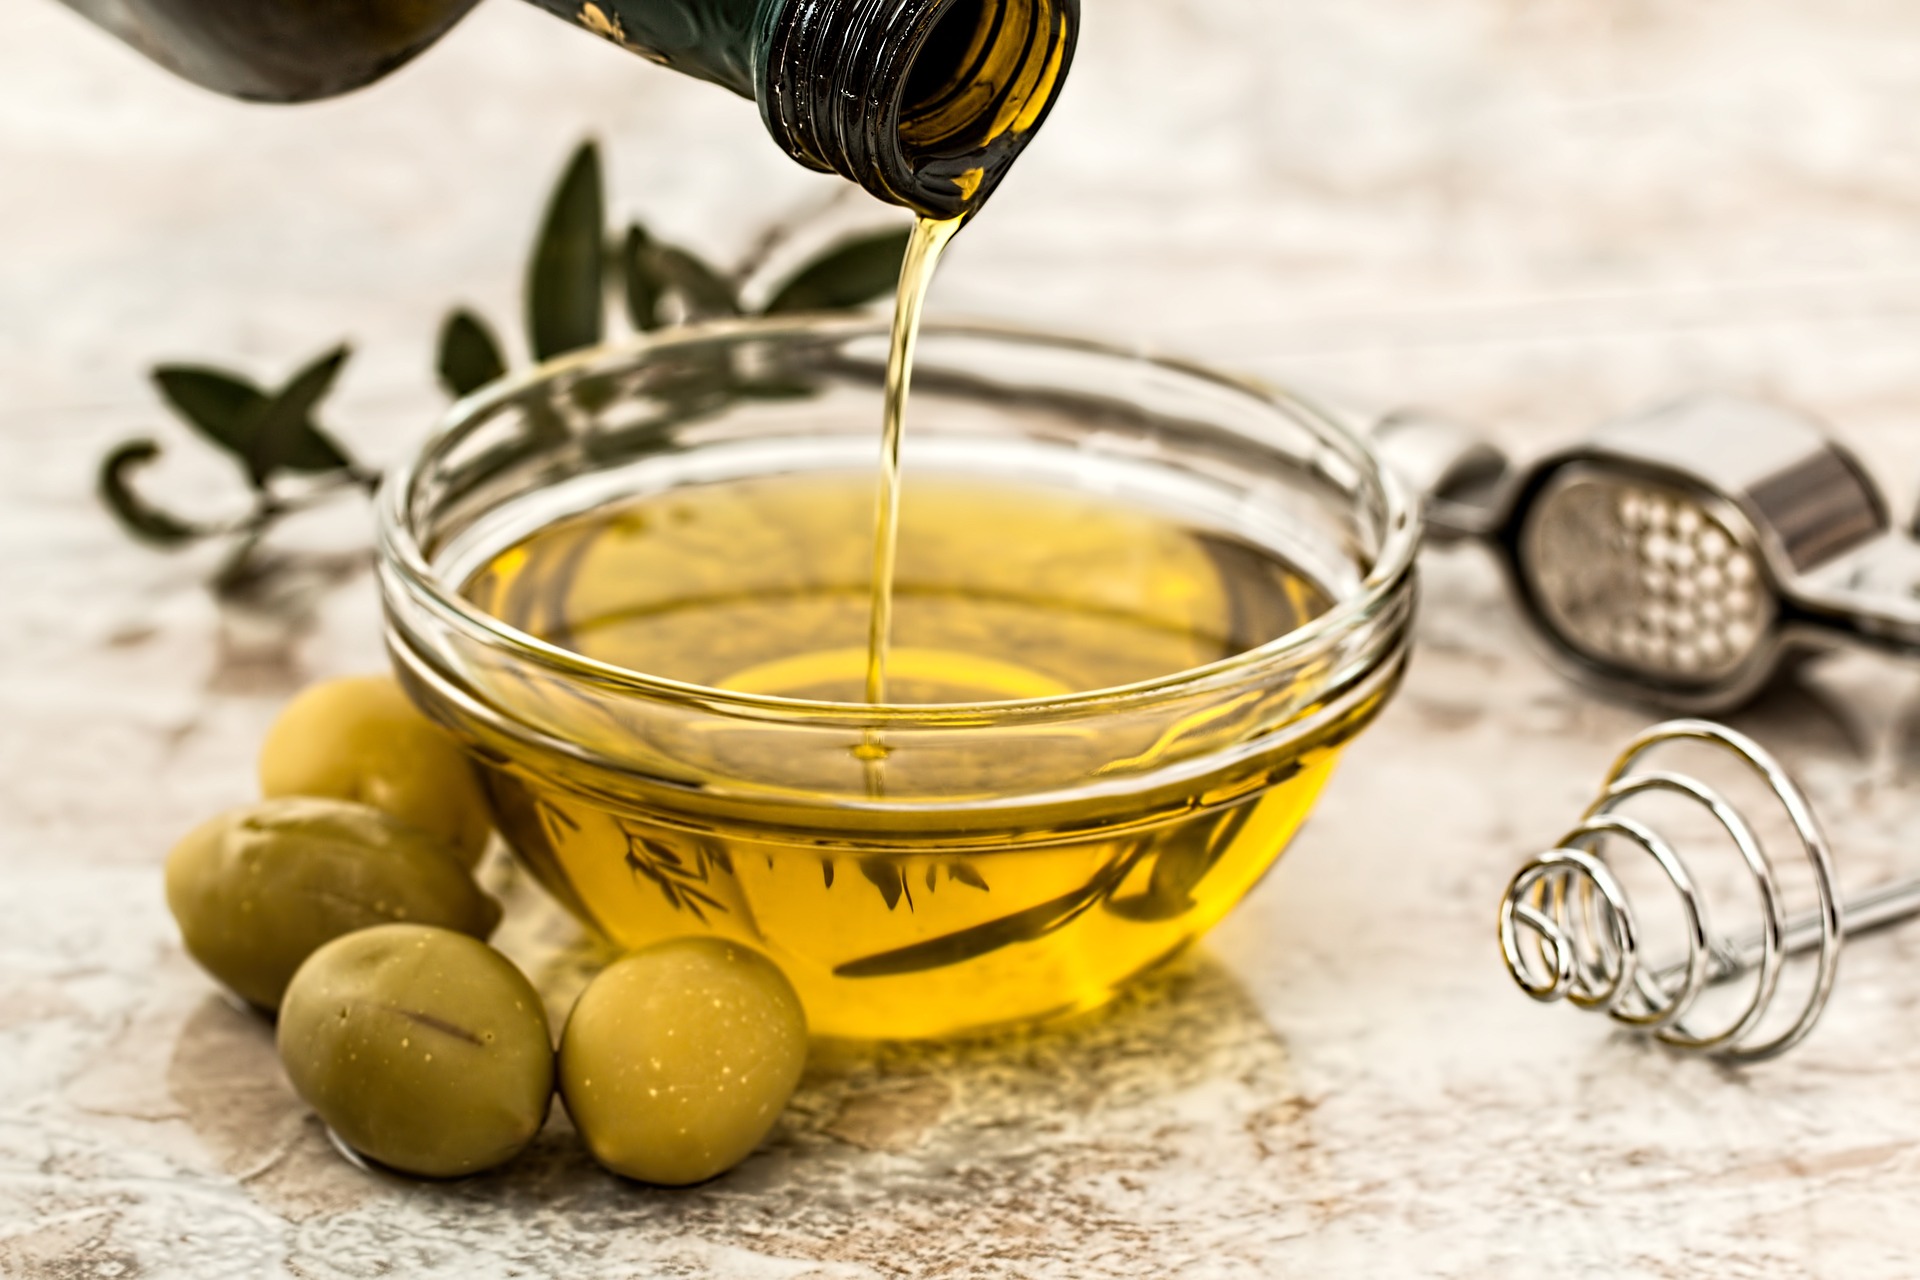 Inspekcja Handlowa skontrolowała oleje i oliwy